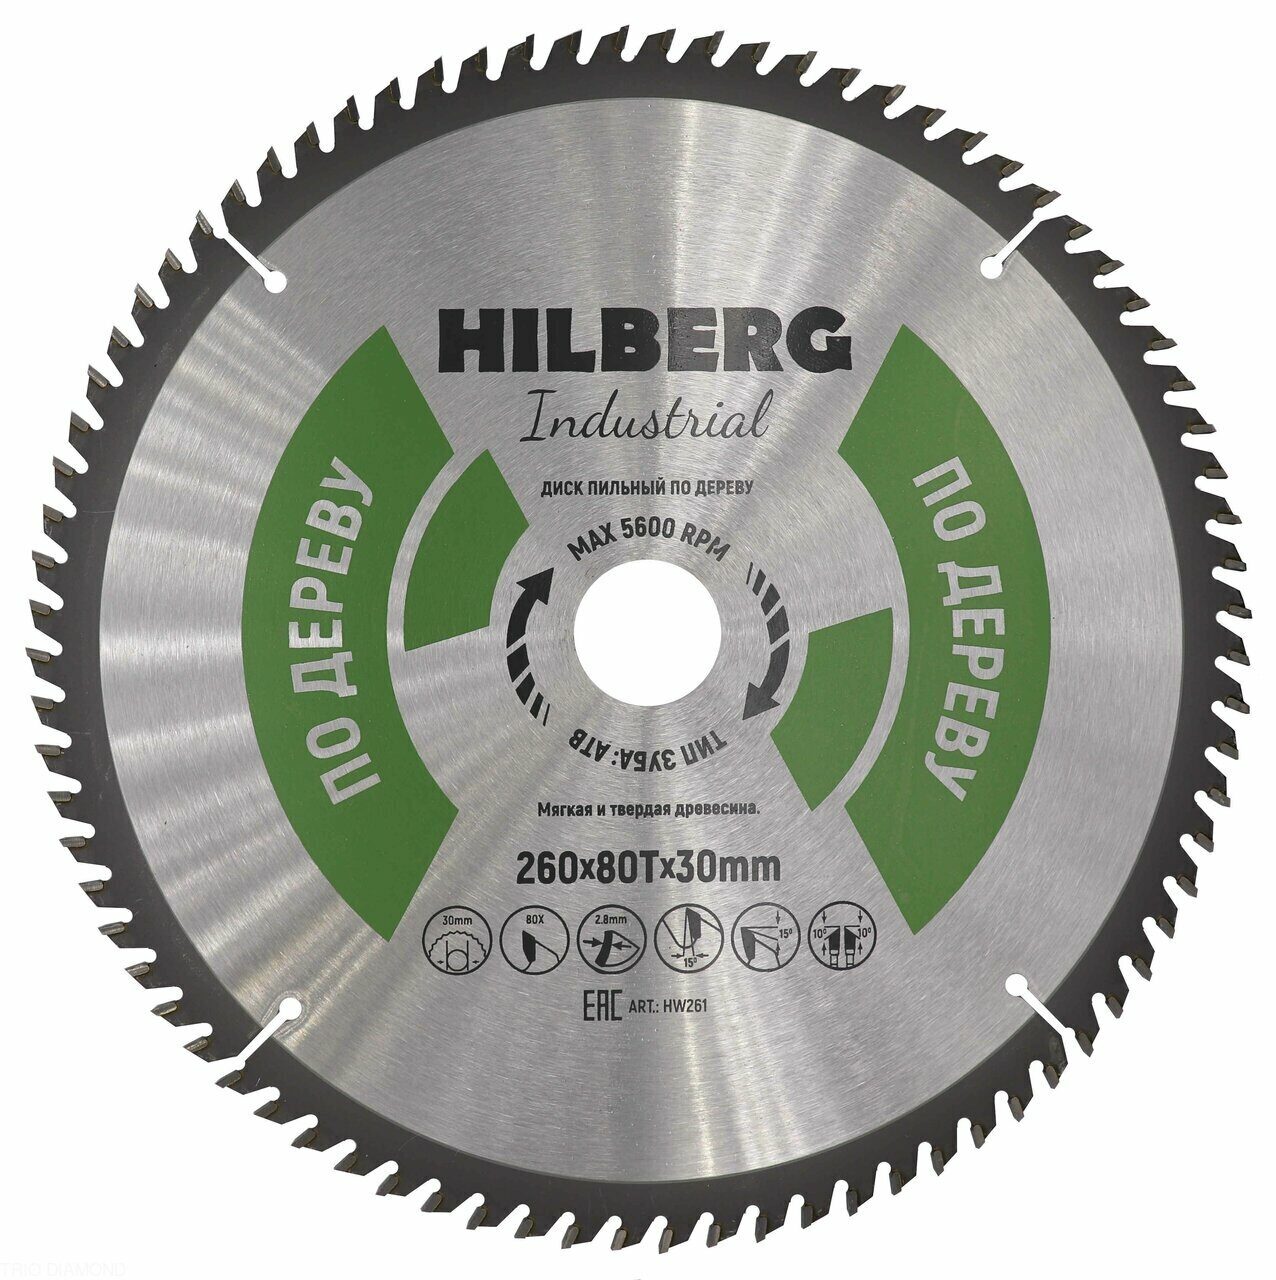 Диск пильный Hilberg Industrial Дерево 260*30*80Т HW261